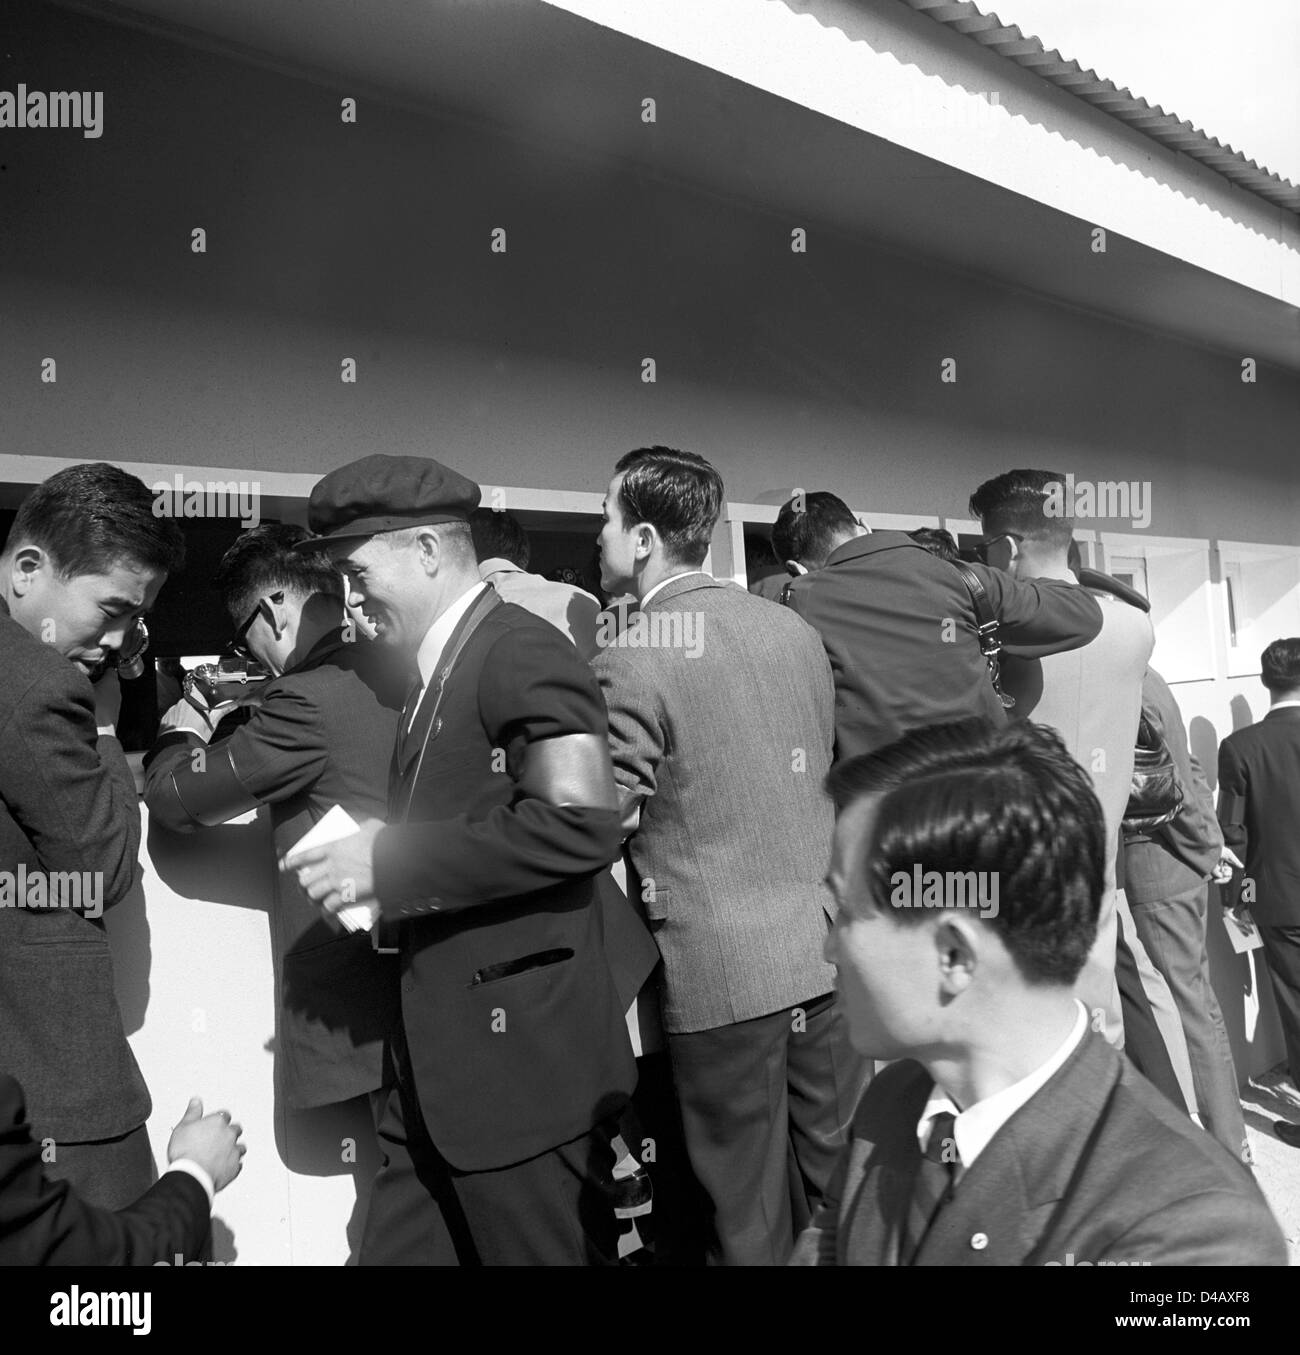 Dopo il cessate il fuoco comitato parla della Croce Rossa in Panmunjon nell' autunno 1971, i colloqui tra Corea del Nord e Corea del Sud vi si svolgono come bene. In particolare organizzato riunioni di famiglia e riunioni di famiglia sono un argomento centrale. Fotografi coreani catturare la riunione nella caserma sull'immagine. La foto è stata scattata il 3 novembre nel 1971. Panmunjon è una zona militare nella zona demilitarizzata tra la Corea del Nord e Corea del Sud. Foto: ddrbildarchiv.de / Klaus Morgenstern - GESPERRT FÜR BILDFUNK Foto Stock